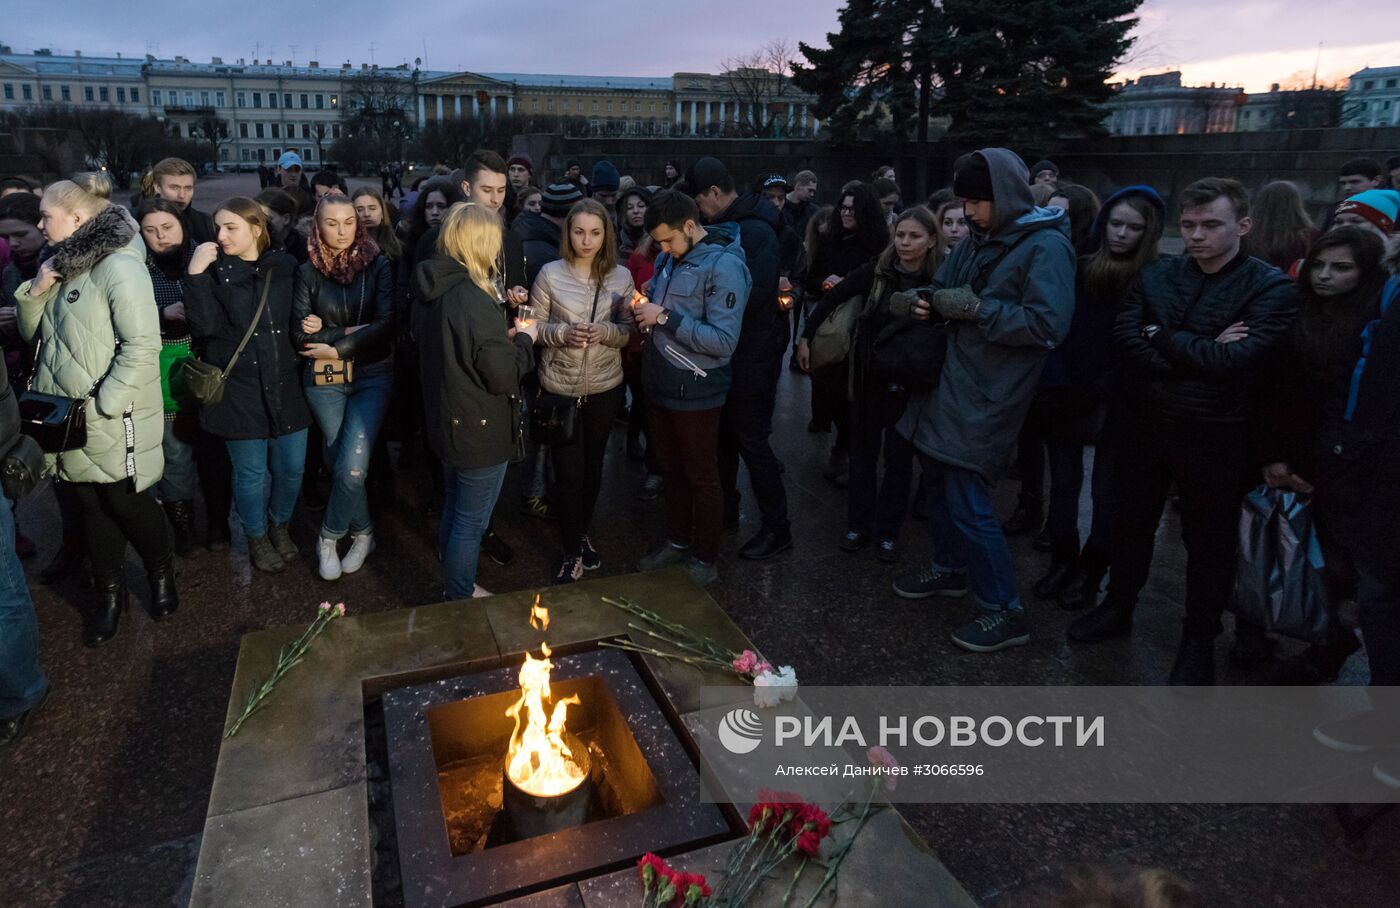 Жители Петербурга выстроились в фигуру "14:40" в память о погибших в метро